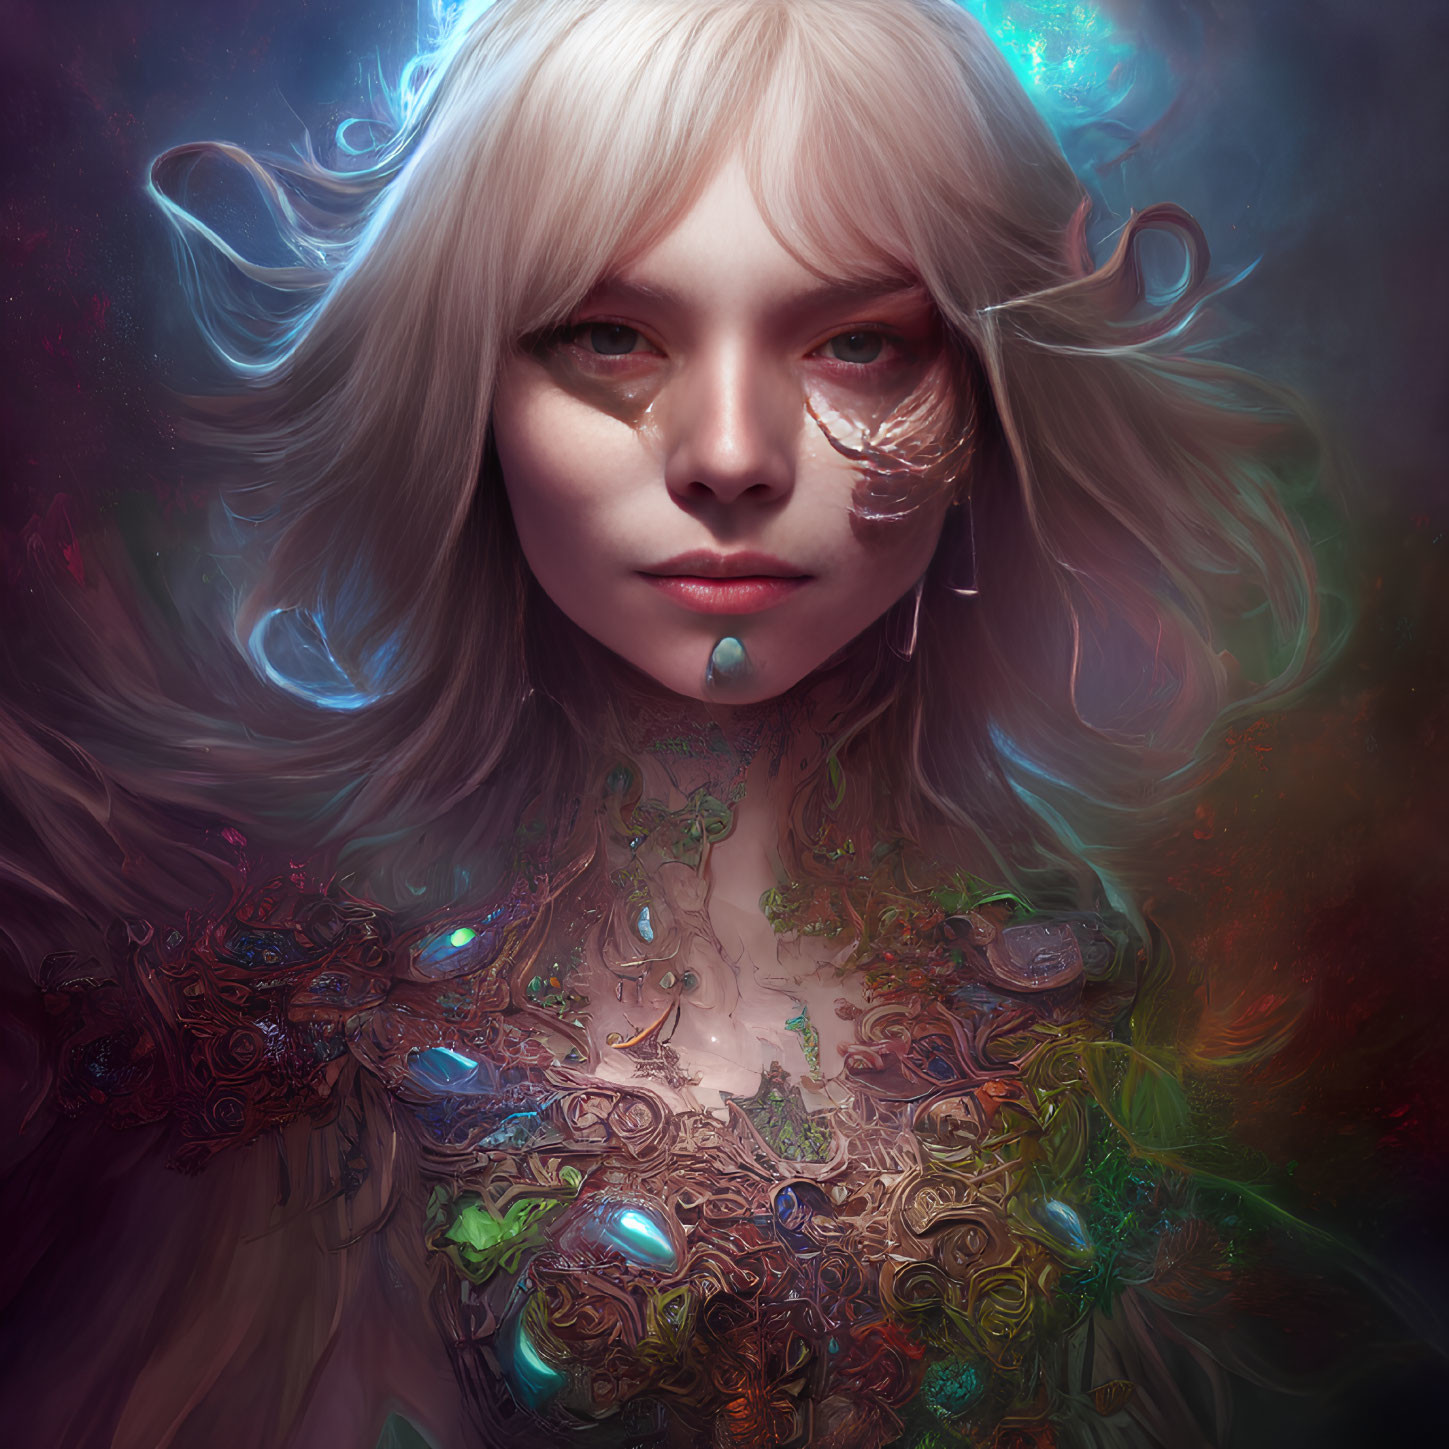 Fantasy portrait: Female with silver hair, crystalline tear, scarred eye, ornate attire